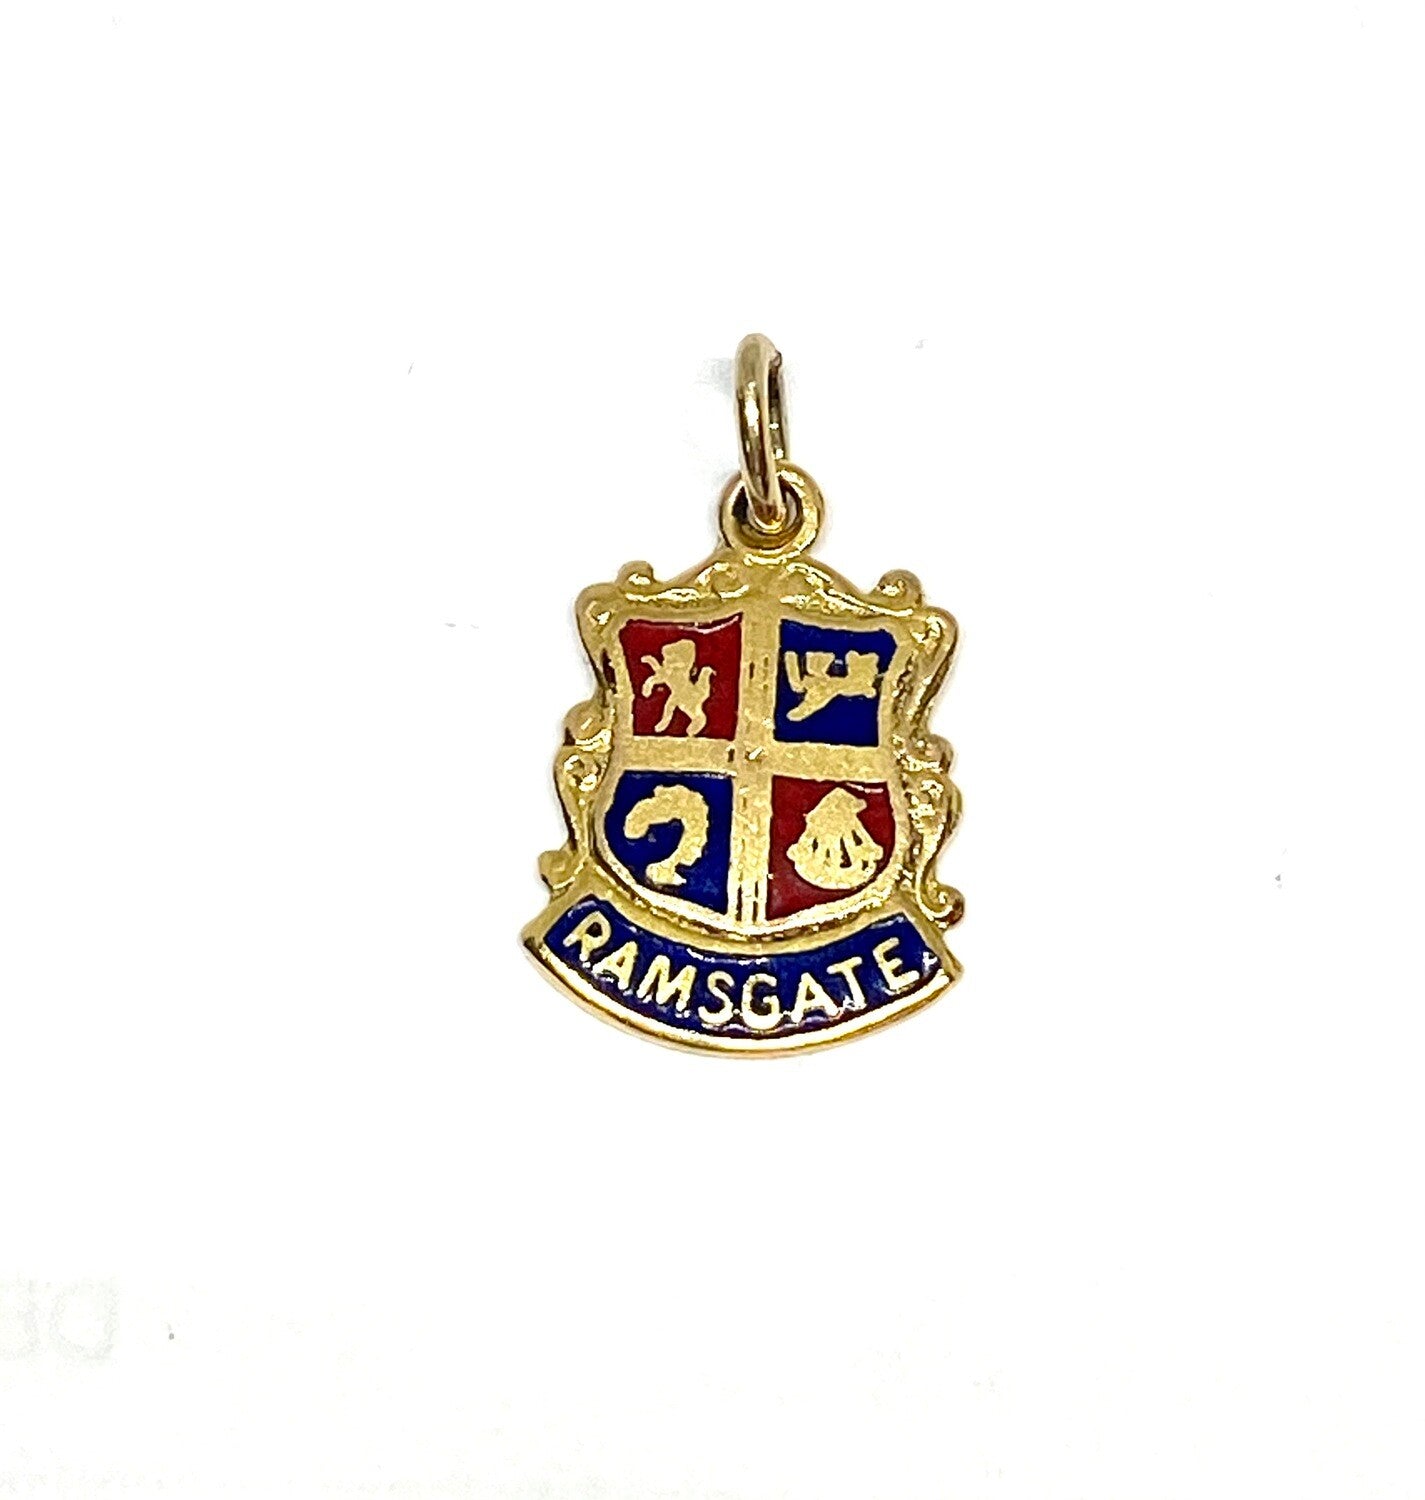 9ct vintage Ramsgate shield charm circa 1967